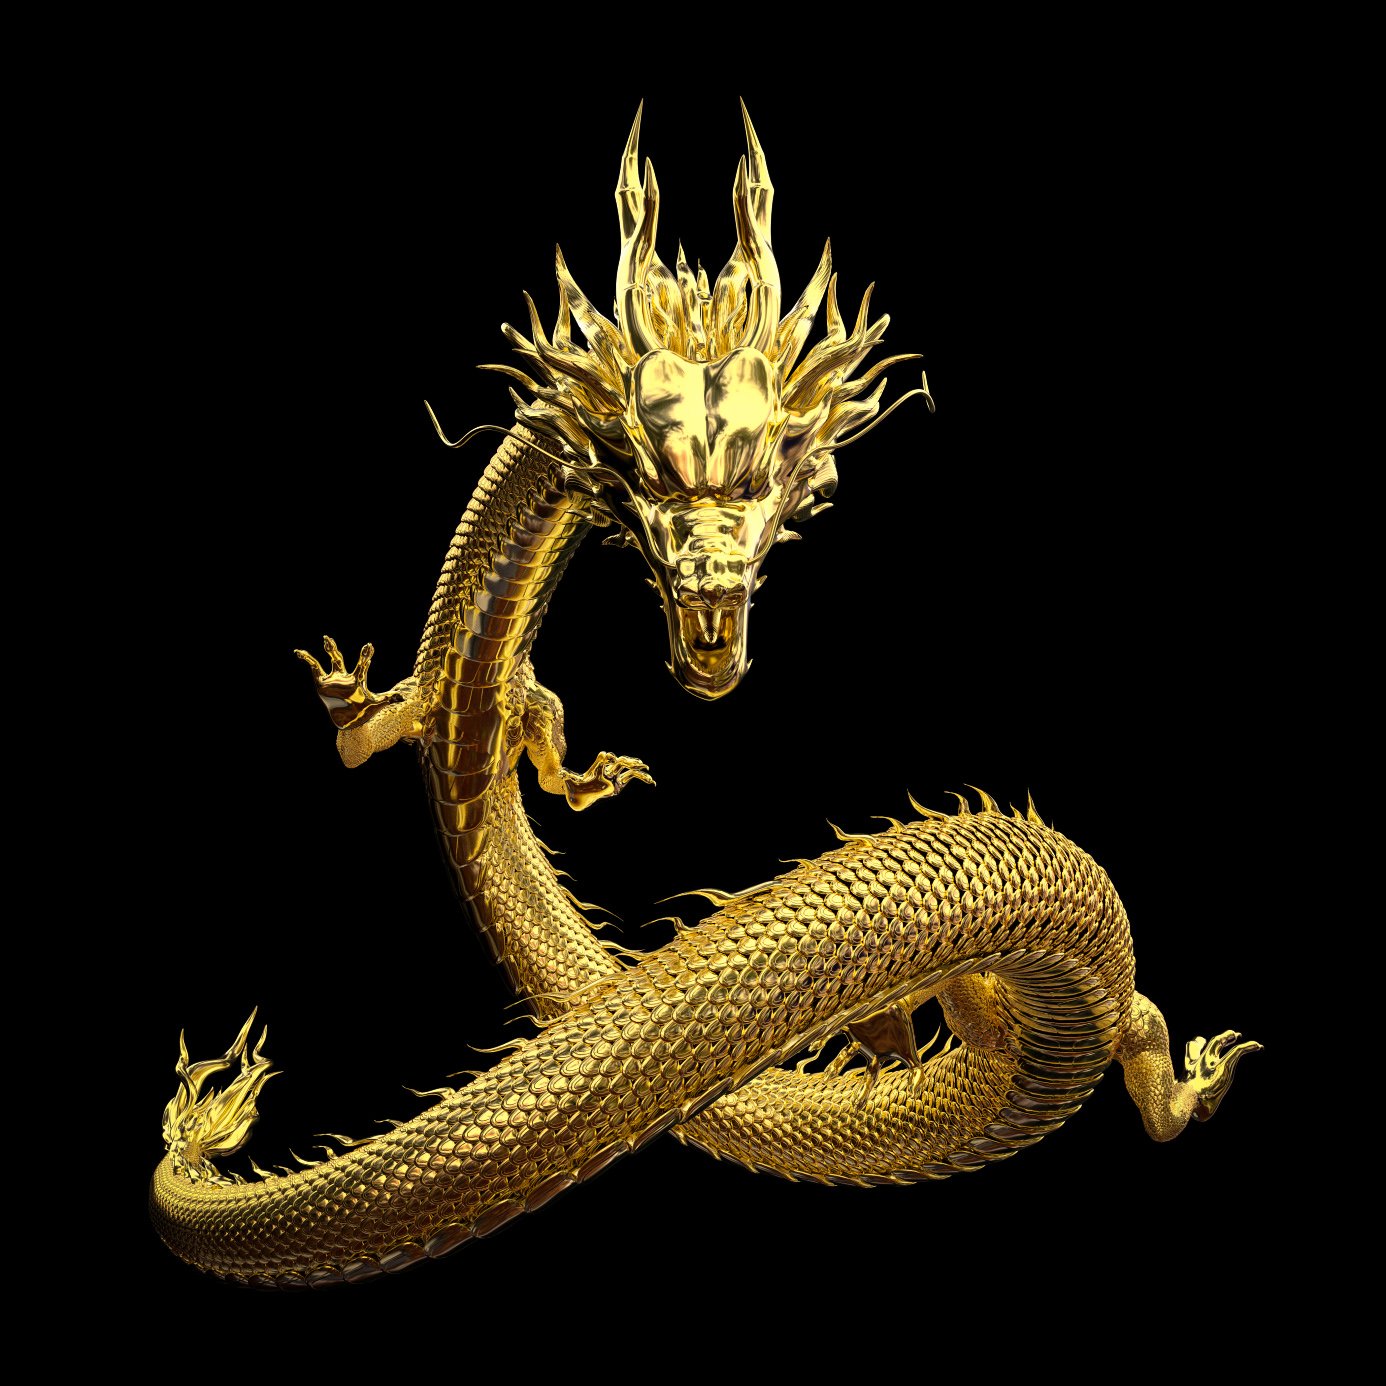 Dragoi kinez, i njohur gjithashtu si mushkëri, është një krijesë legjendare në mitologjinë kineze.